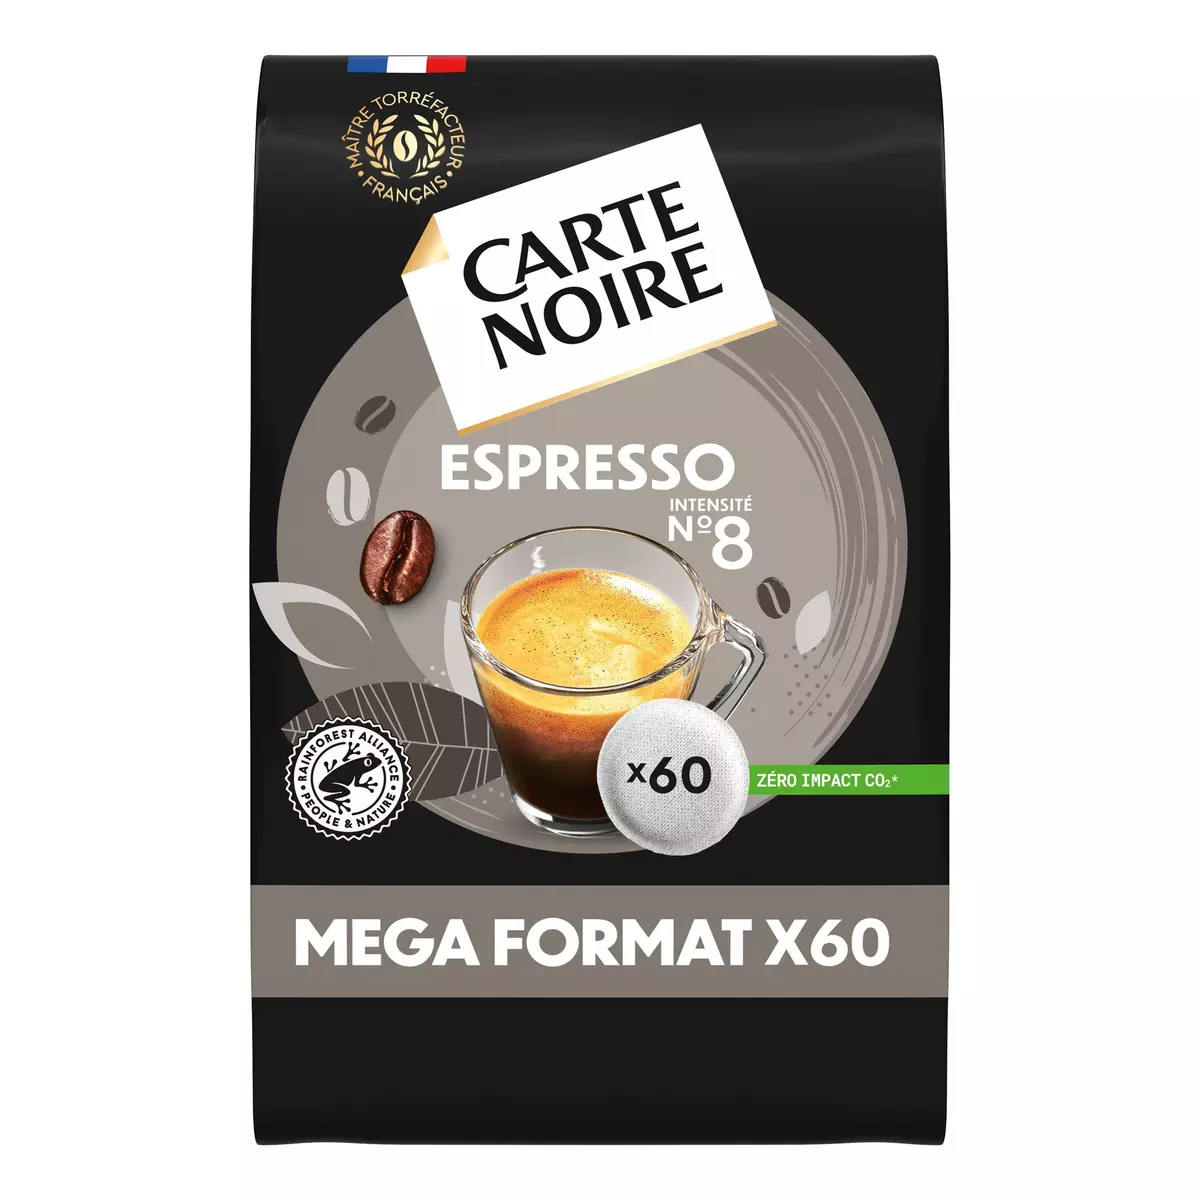 CARTE NOIRE Dosettes souples de café Espresso intensité 8 60 dosettes 420g